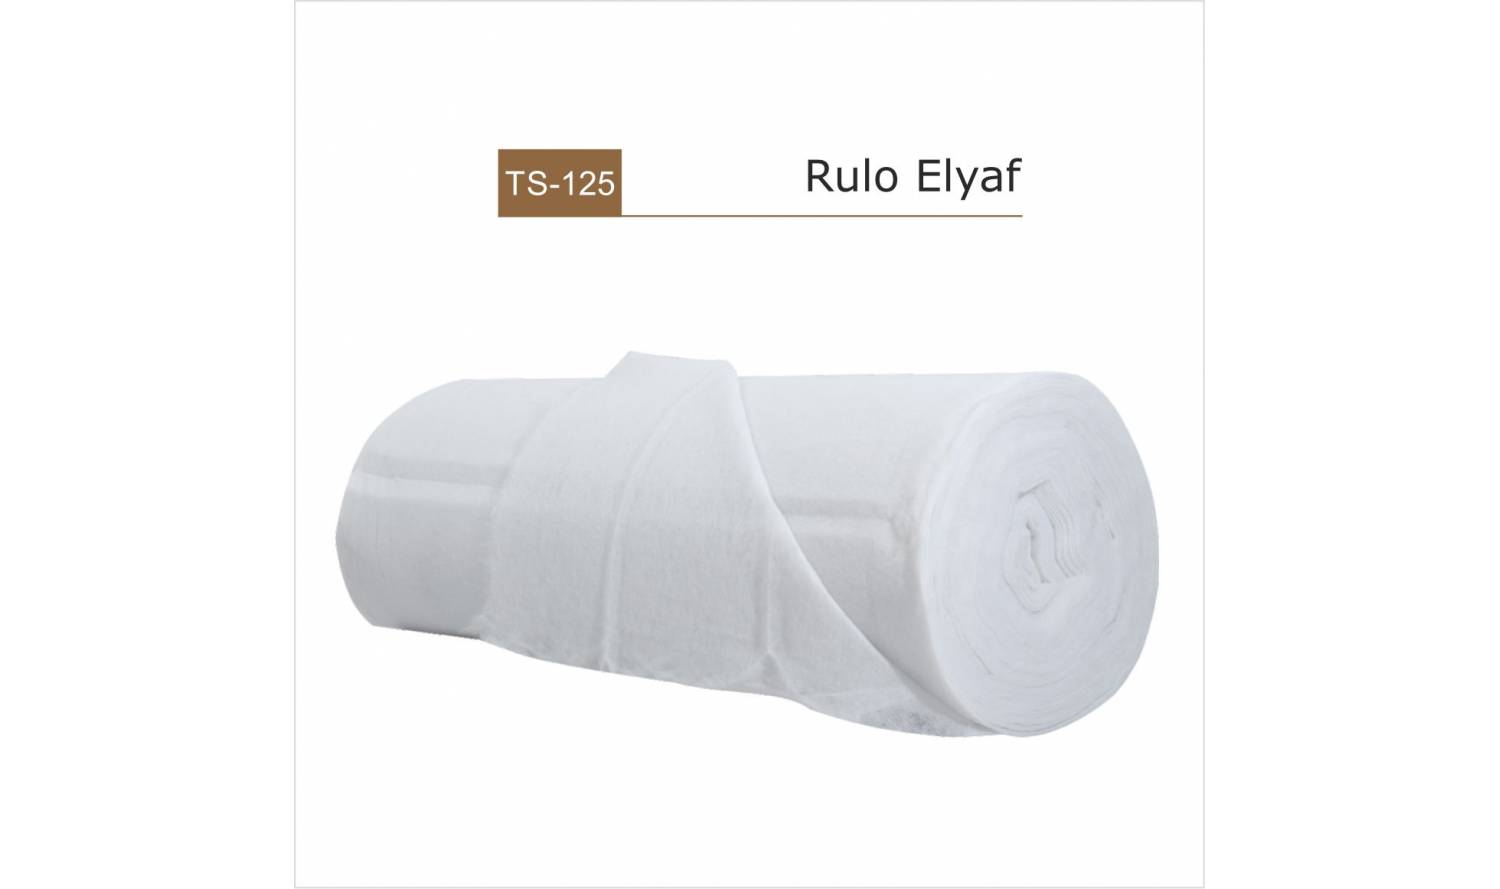 TS-125 / Rulo Elyaf